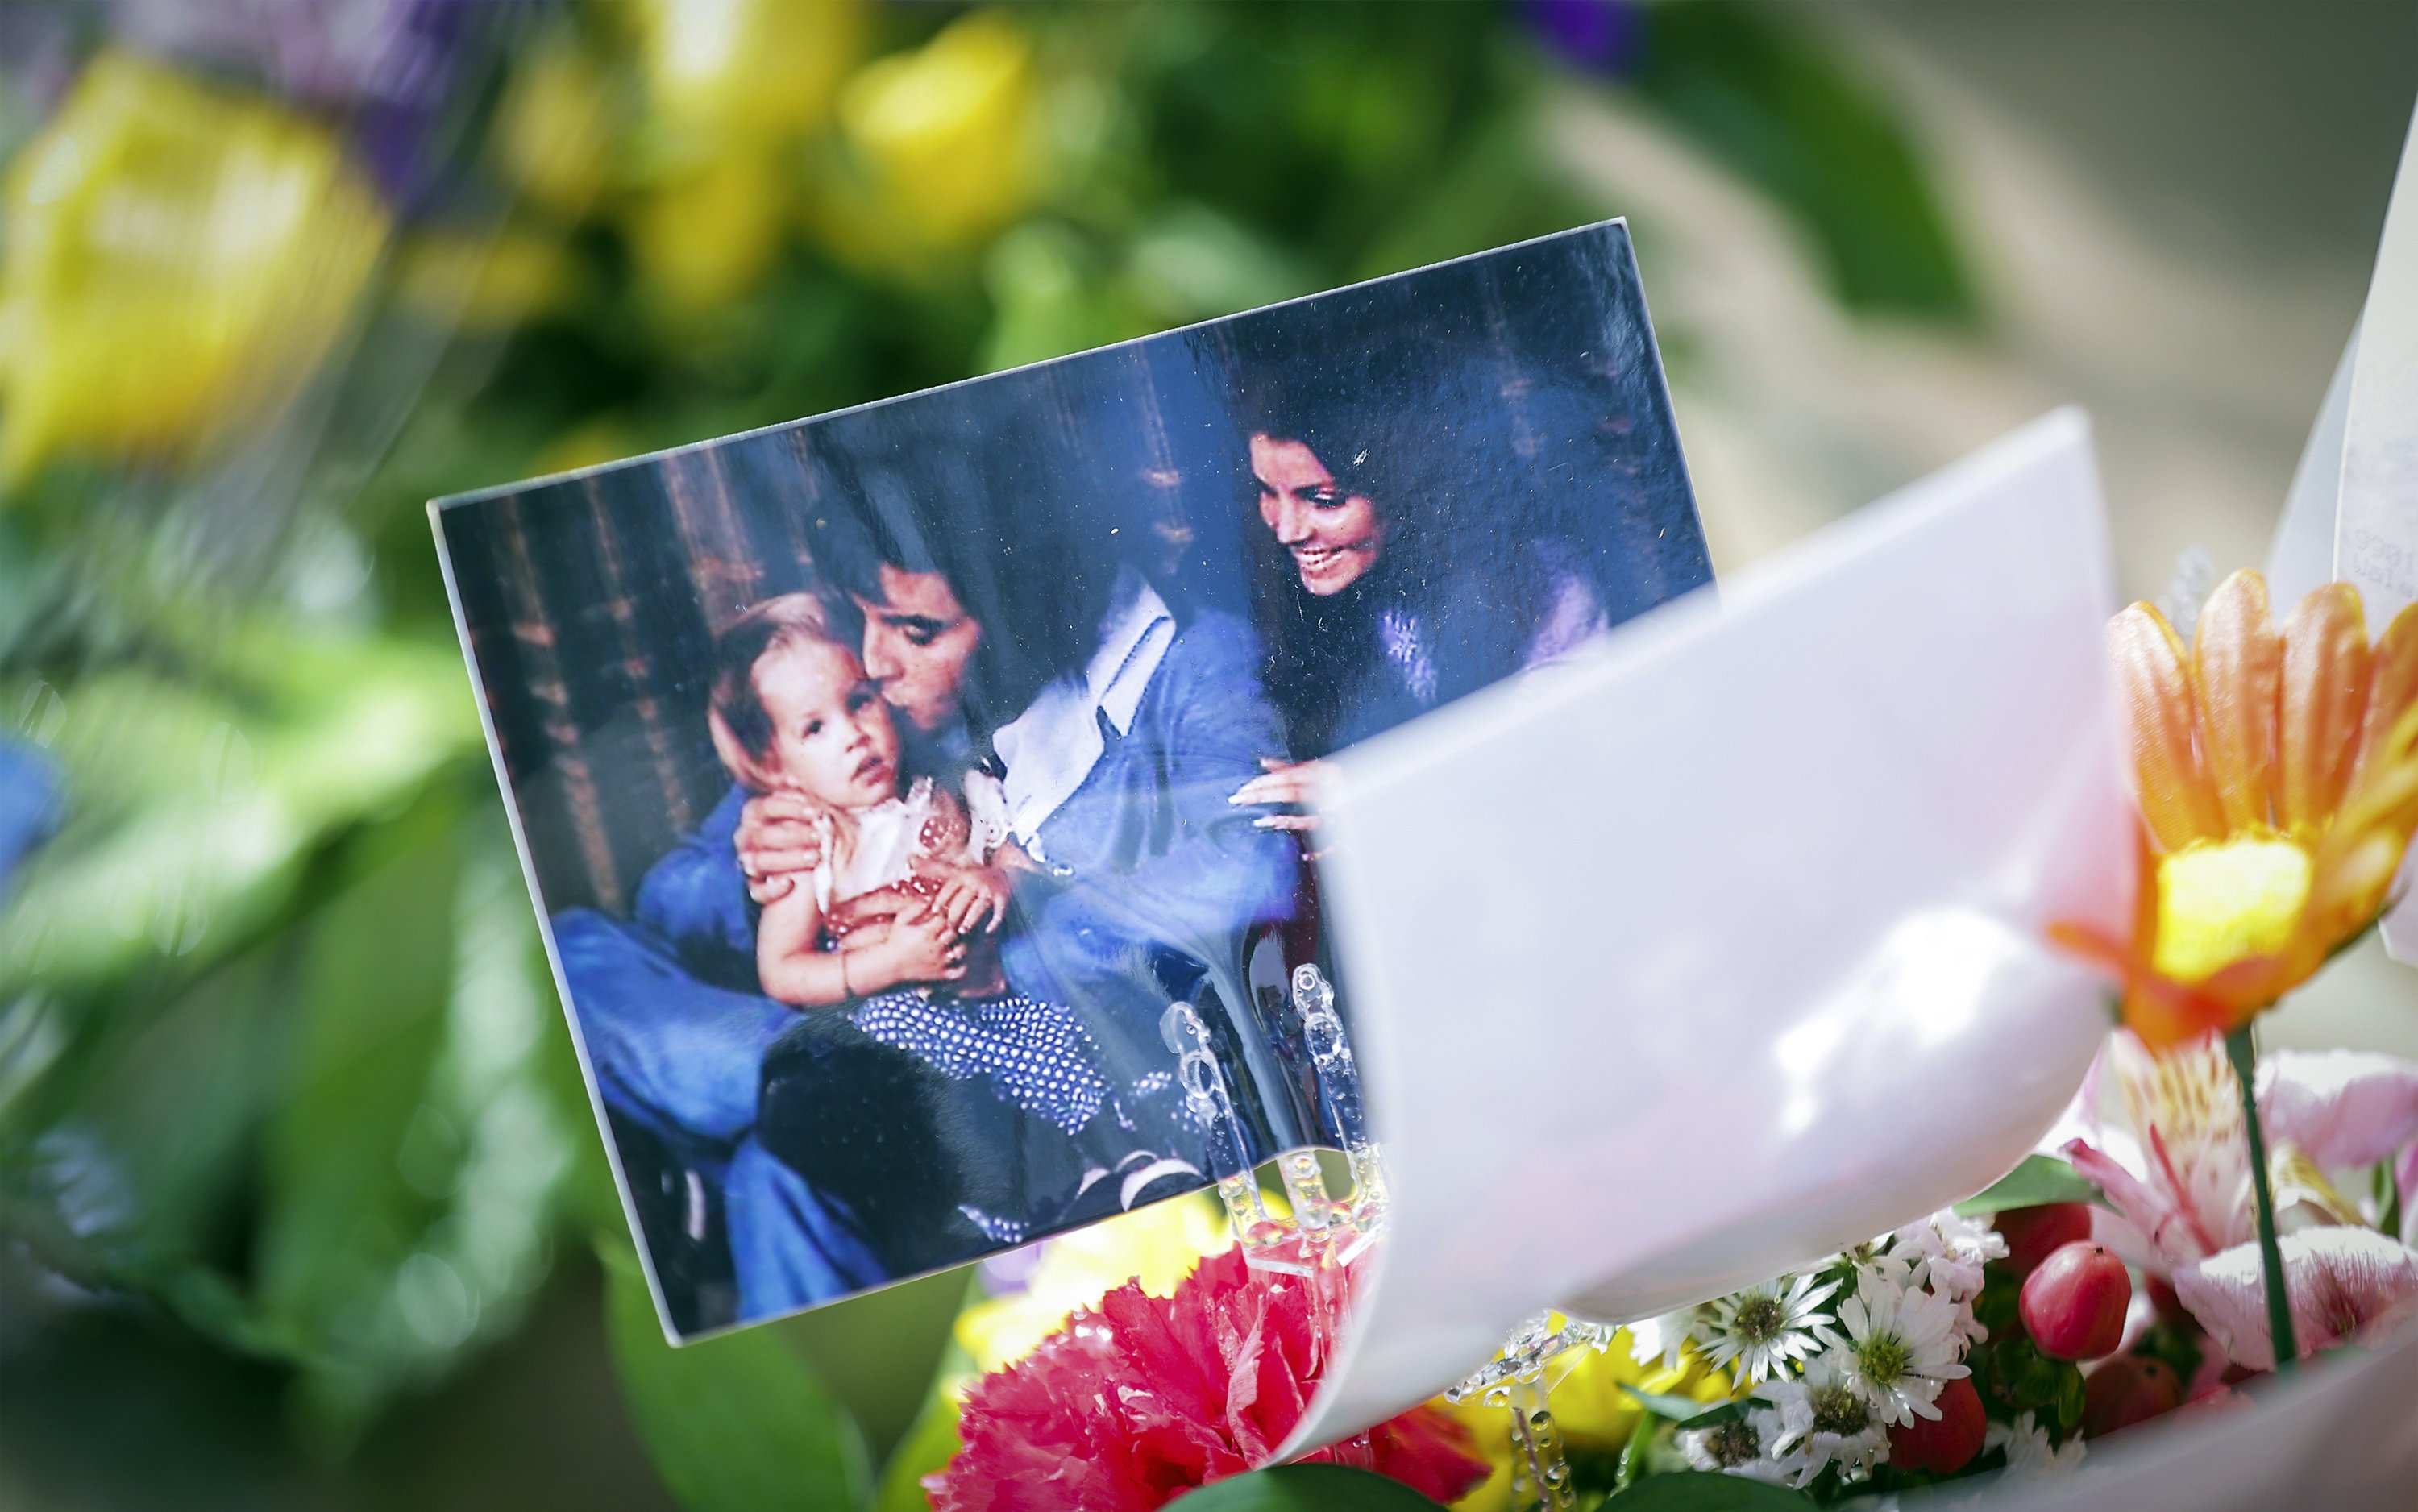 Foto Lisa Marie Presley muda bersama orang tuanya, Elvis Presley dan Priscilla Presley, duduk di atas karangan bunga selama upacara peringatan di Graceland di Memphis, Tenn., AS, 22 Januari 2023. (Foto AP)